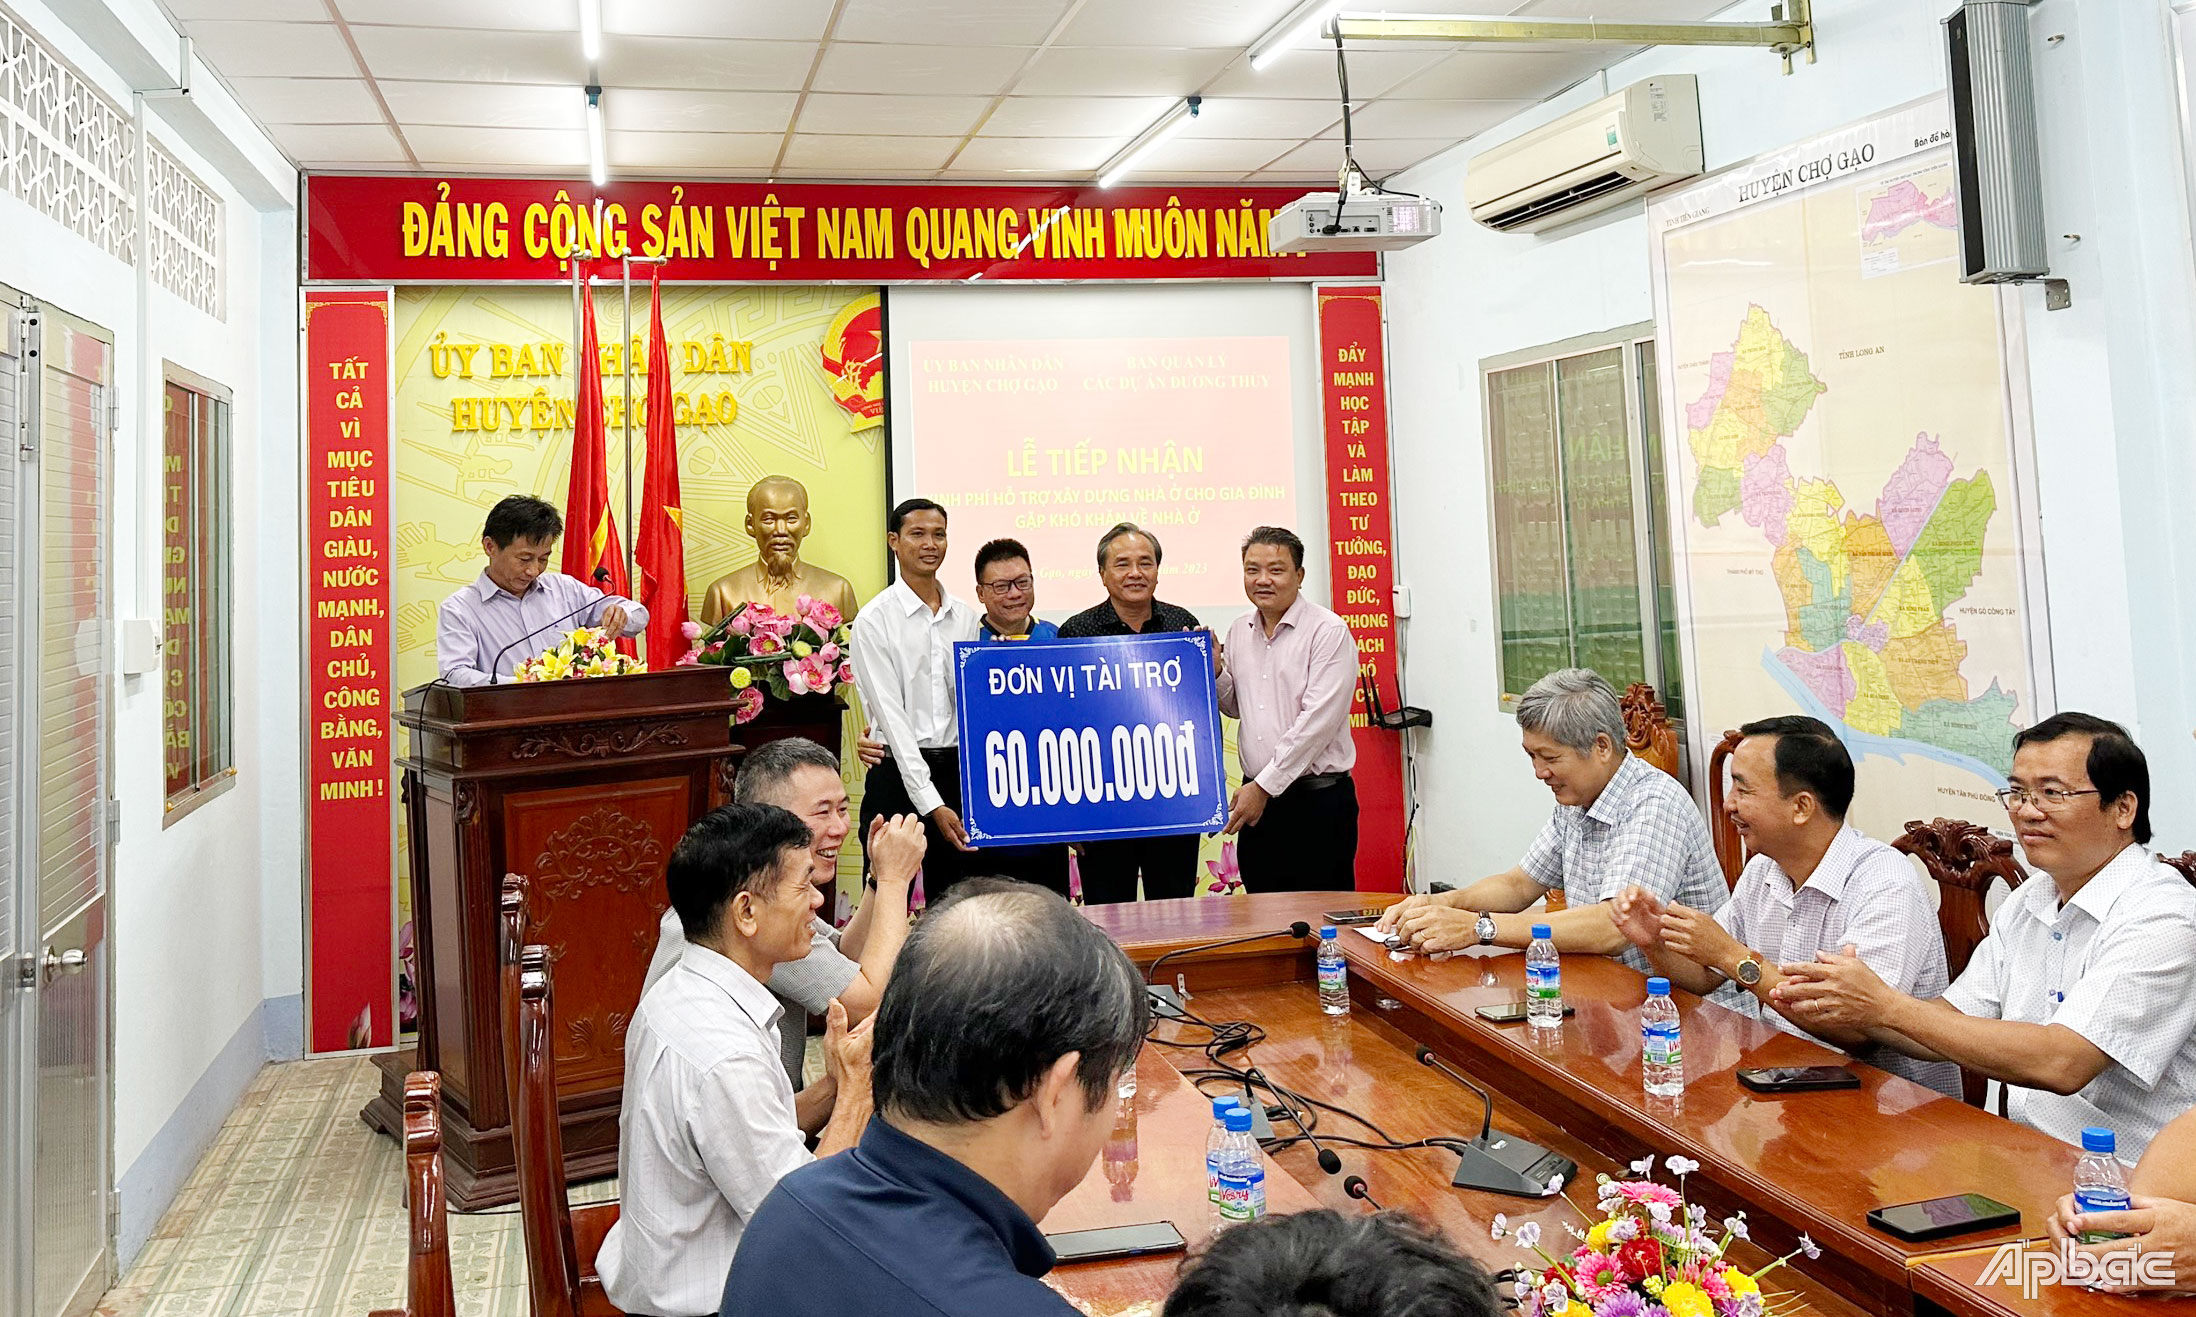 Các nhà tài trợ trao bảng tượng trưng cho đại diện UBND huyện Chợ Gạo.